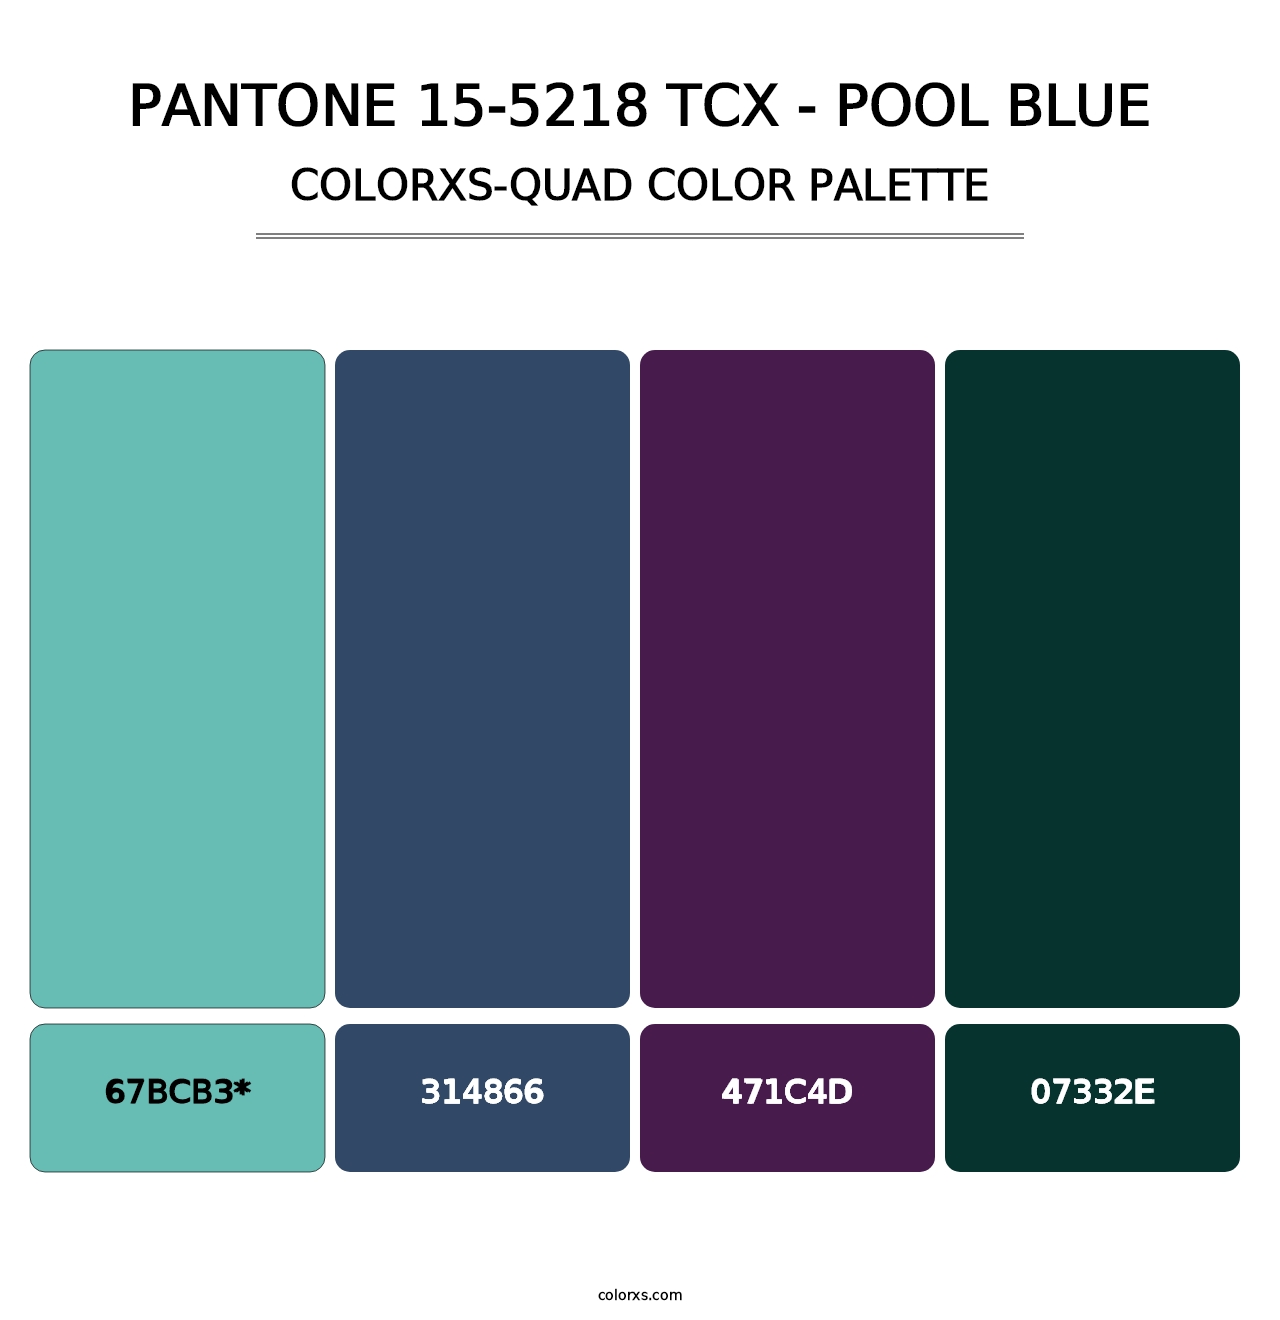 PANTONE 15-5218 TCX - Pool Blue - Colorxs Quad Palette